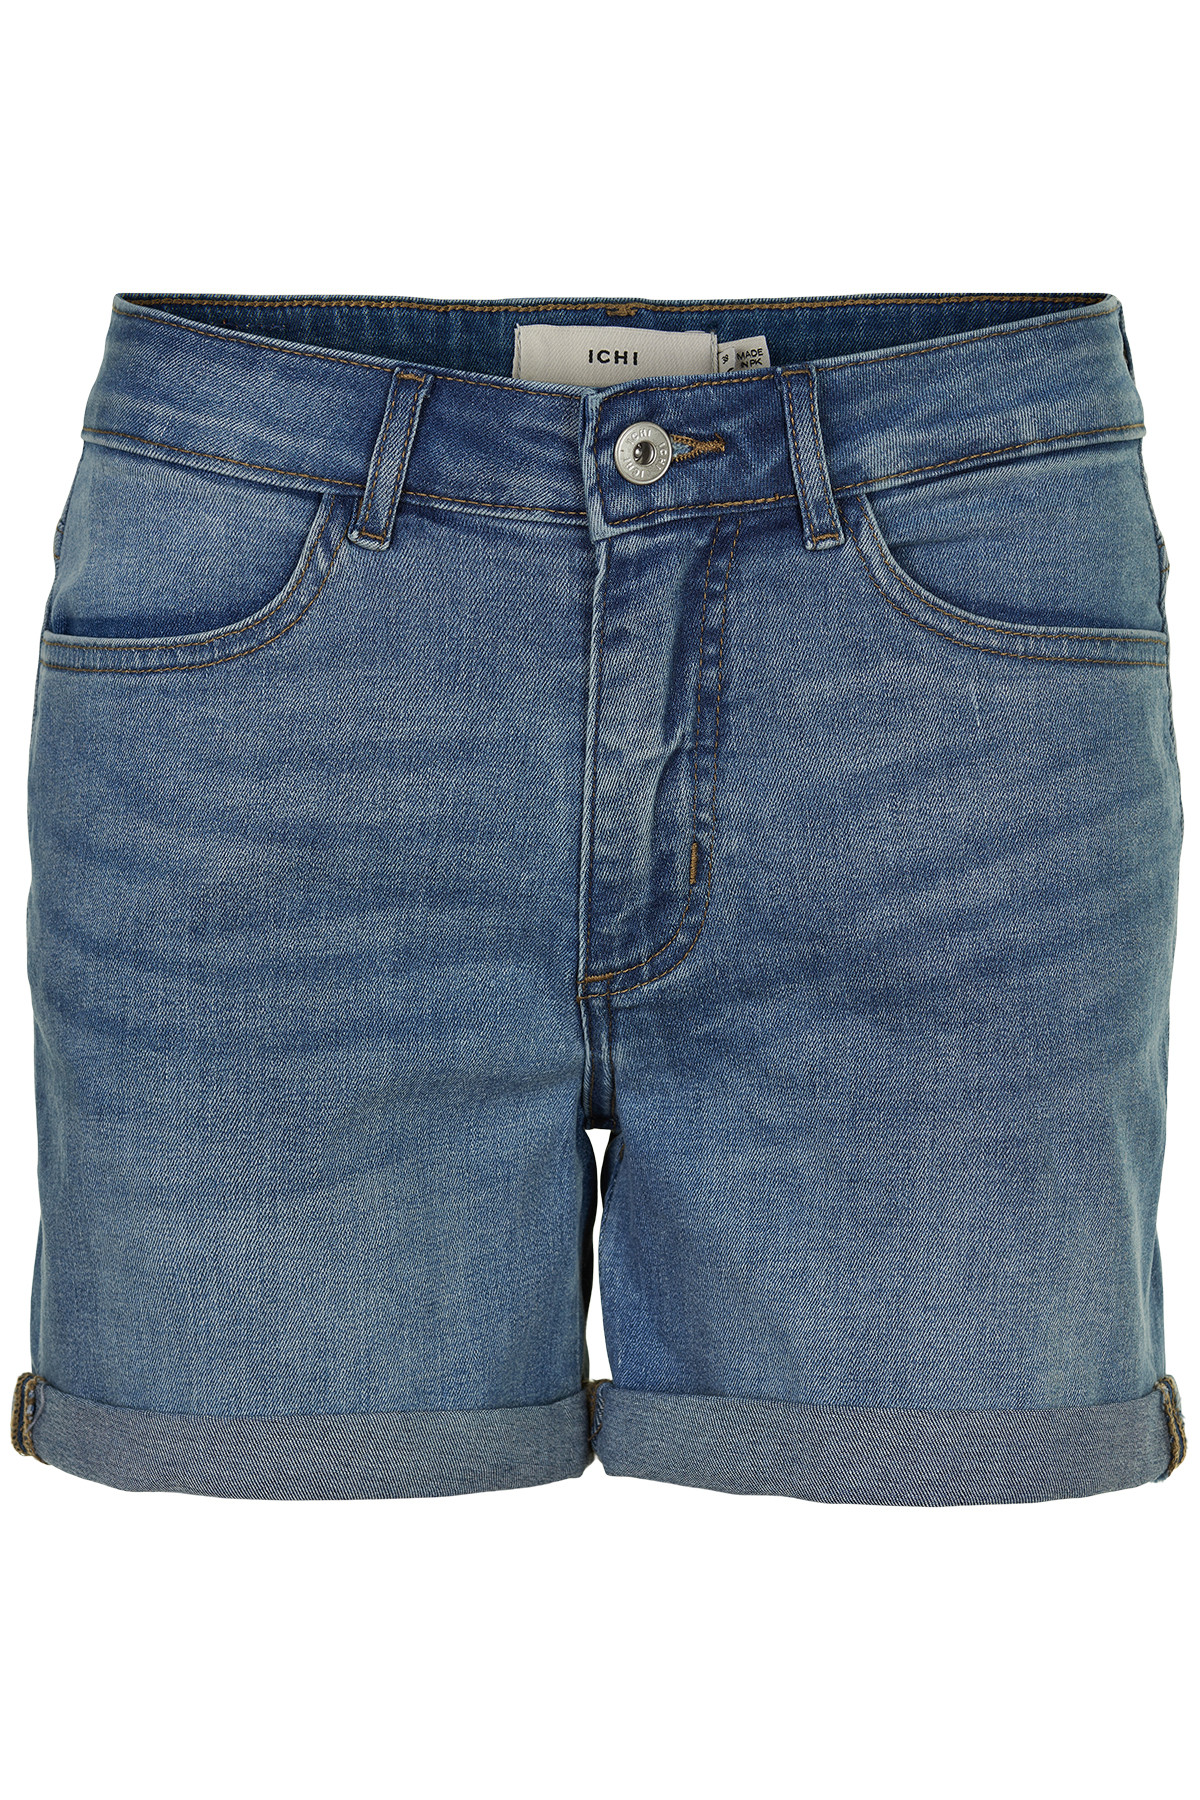 Ichi Twiggy Shorts, Farve: Blå, Størrelse: 34, Dame